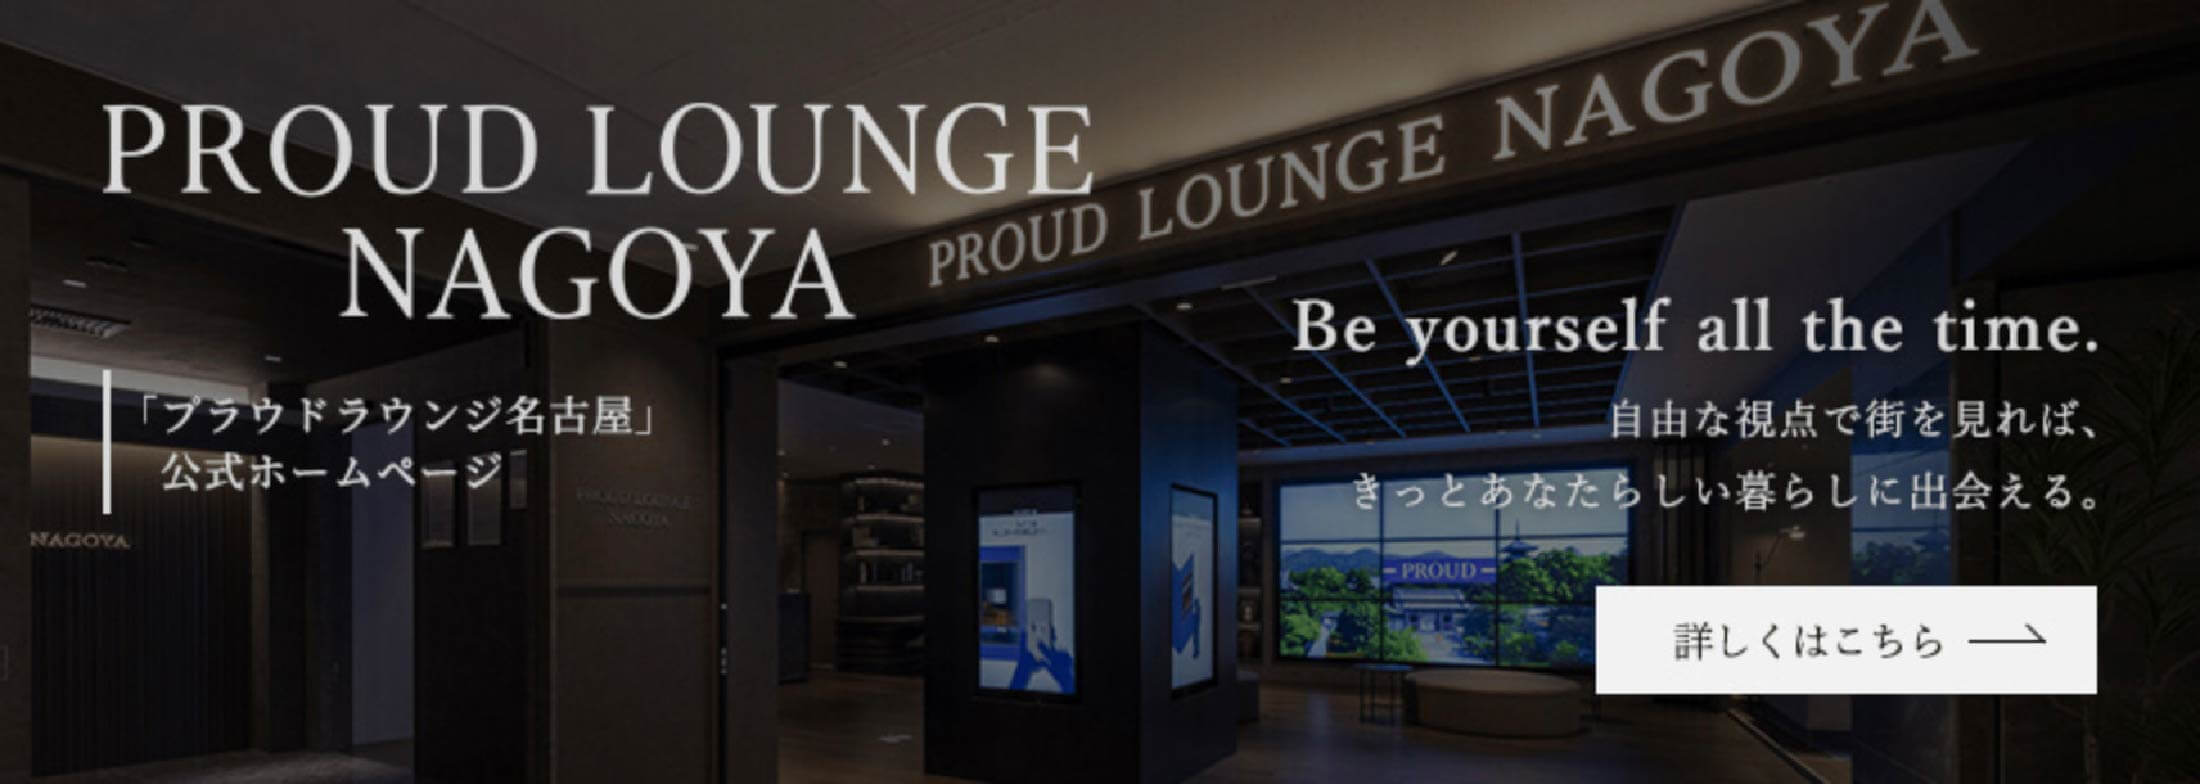 Proud Lounge Nagoya 「プラウドラウンジ名古屋」公式ホームページ 詳しくはこちら